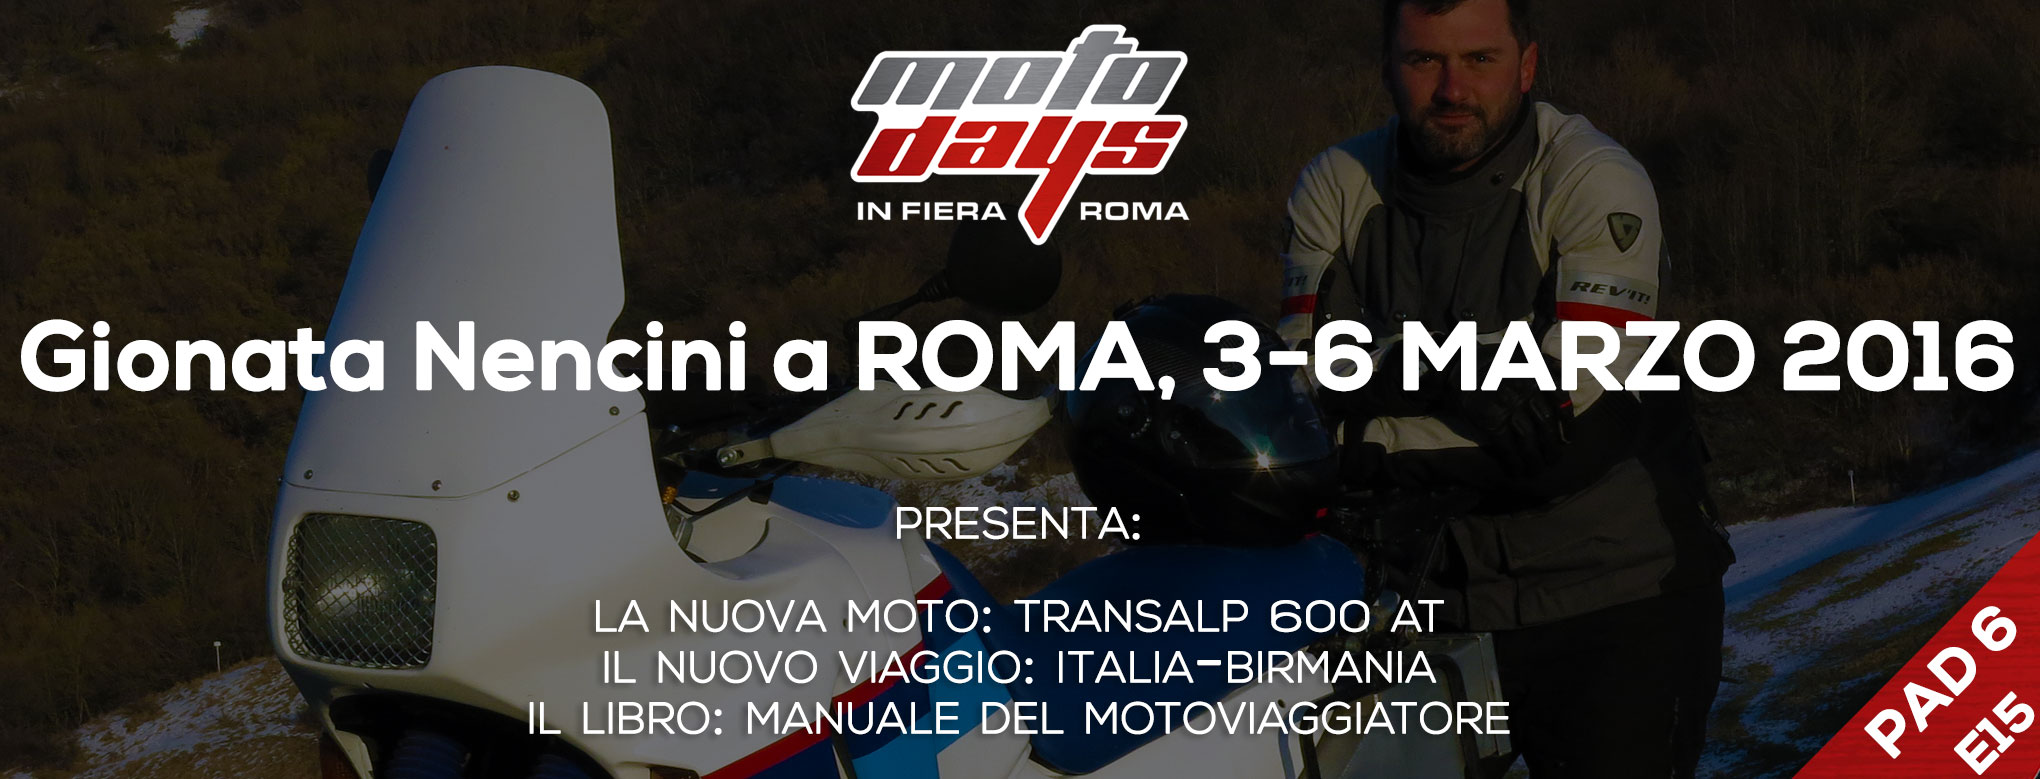 gionata-nencini-partireper-honda-transalp-600-at-motodays-2016-roma-marzo-manuale-del-motoviaggiatore-tour-delle-vie-della-seta